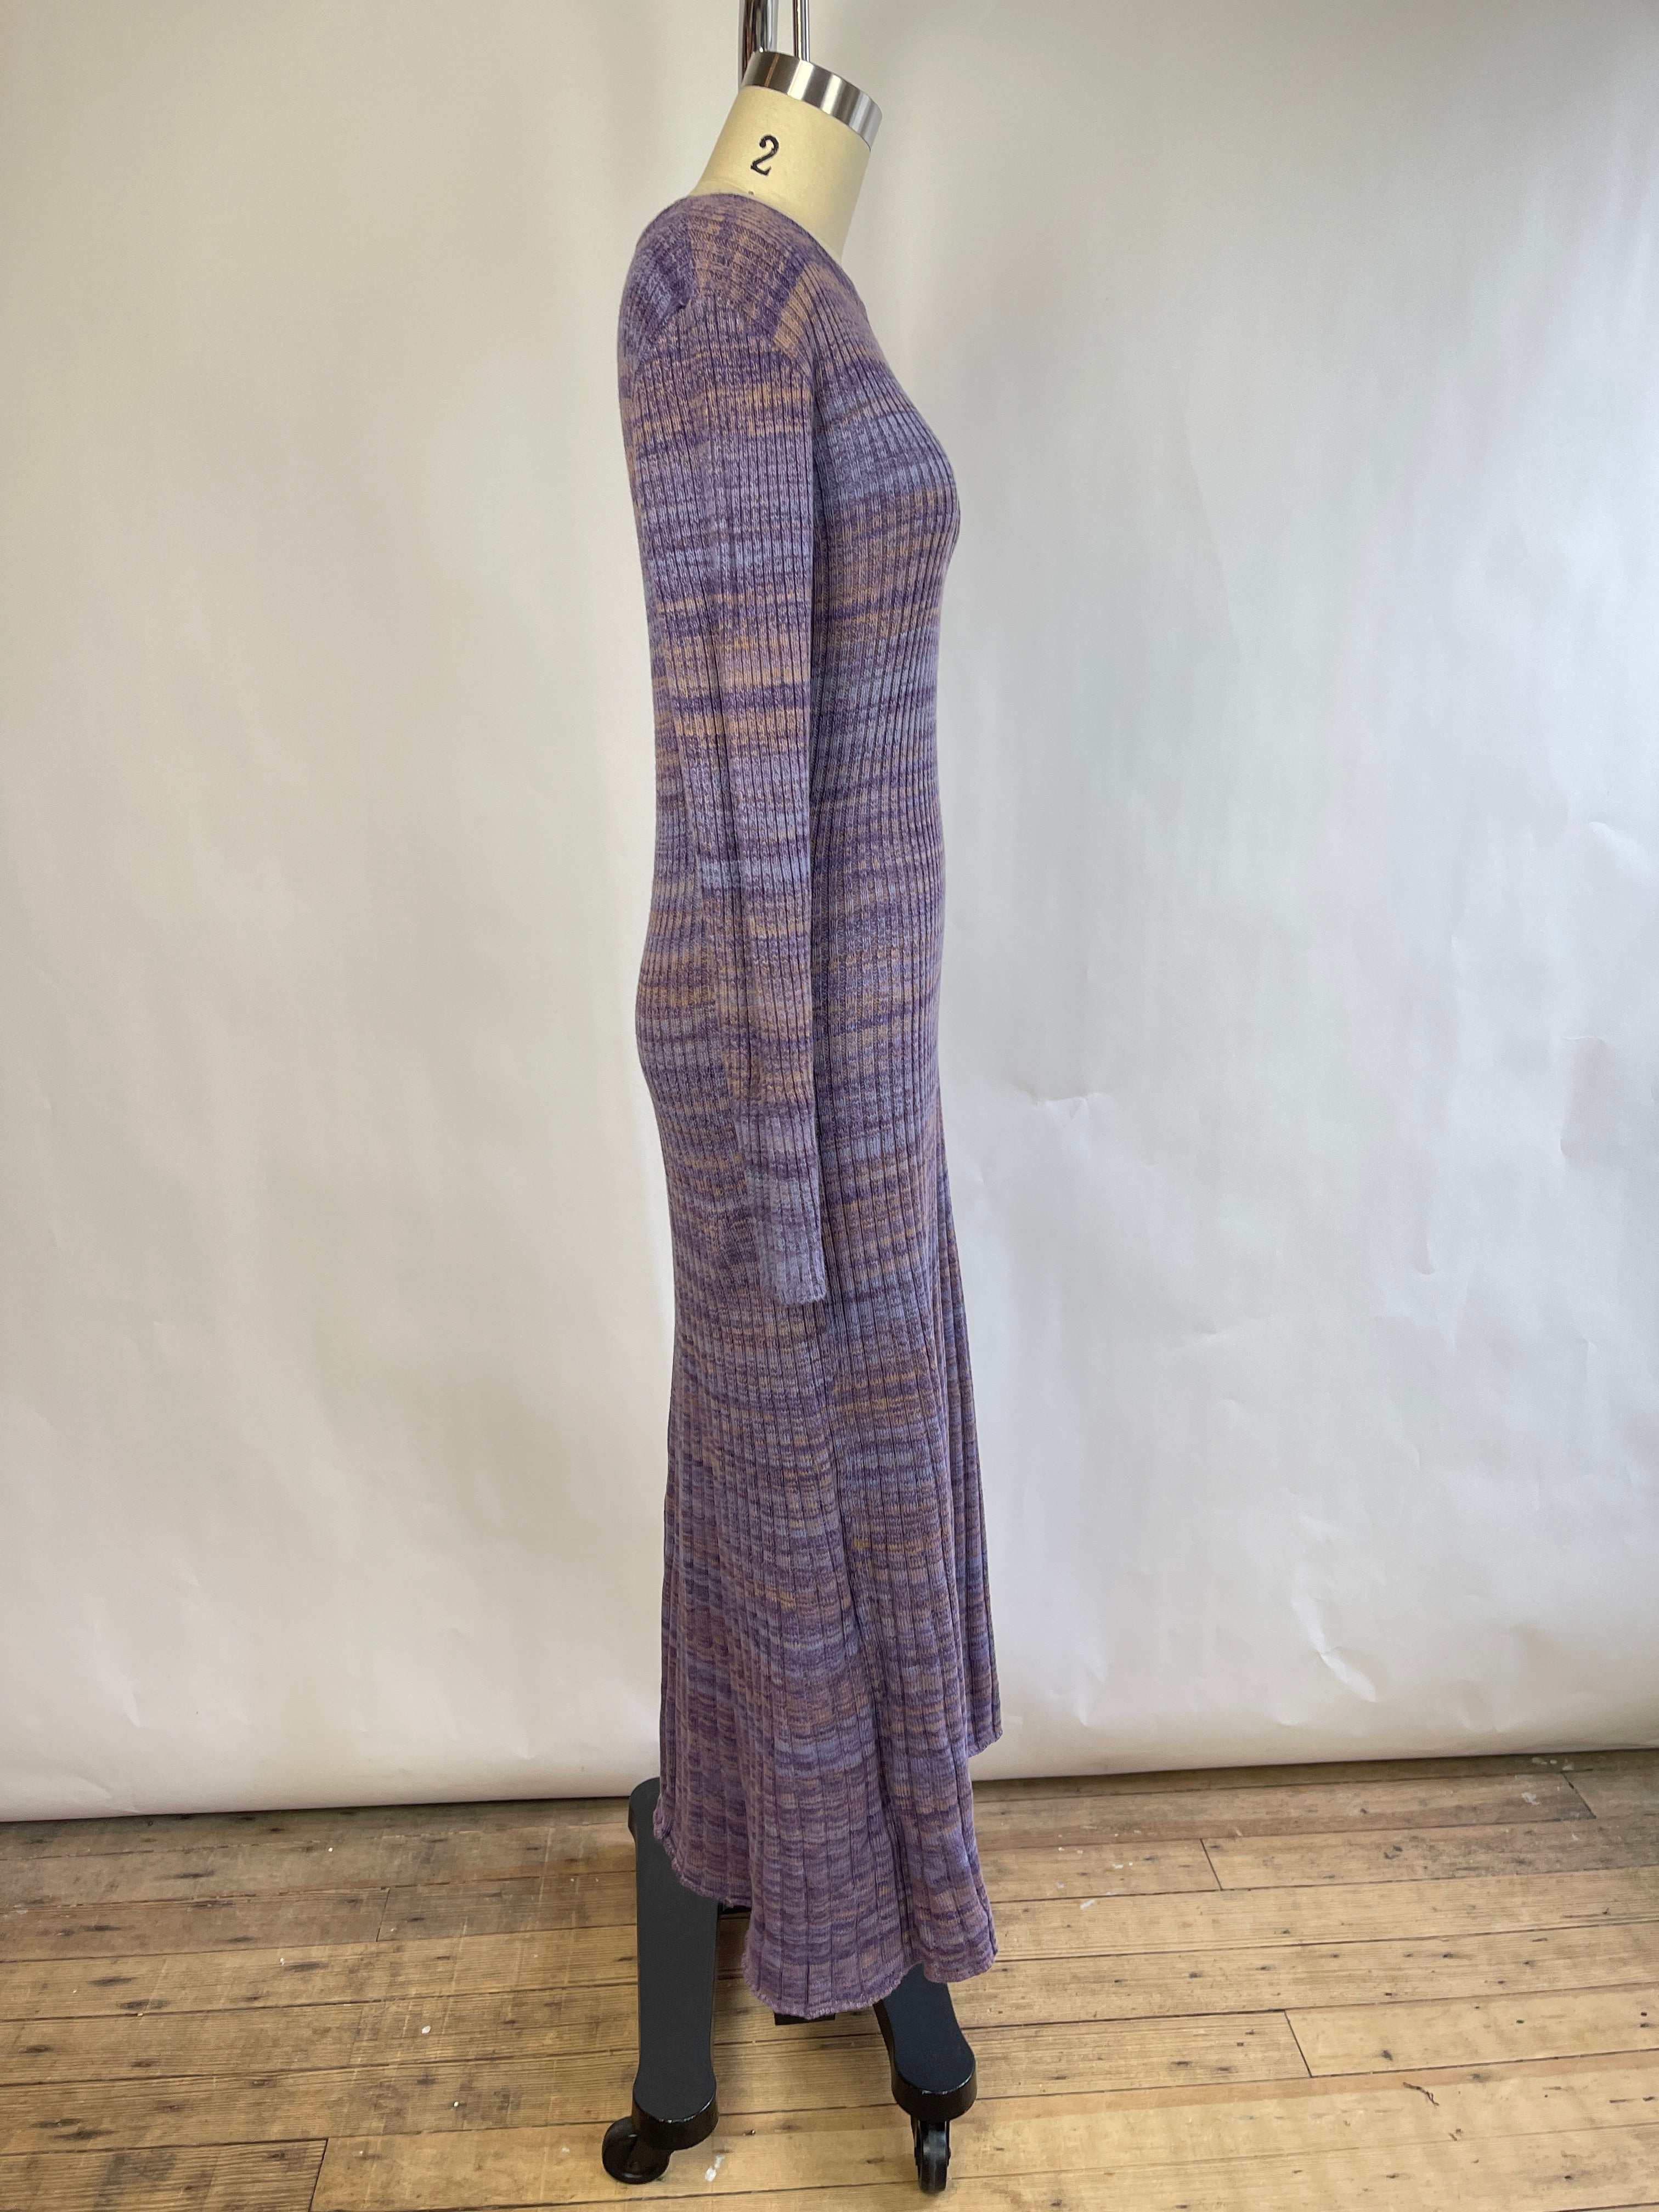 Sess'un "Manfi" Purple Knit Dress (L)